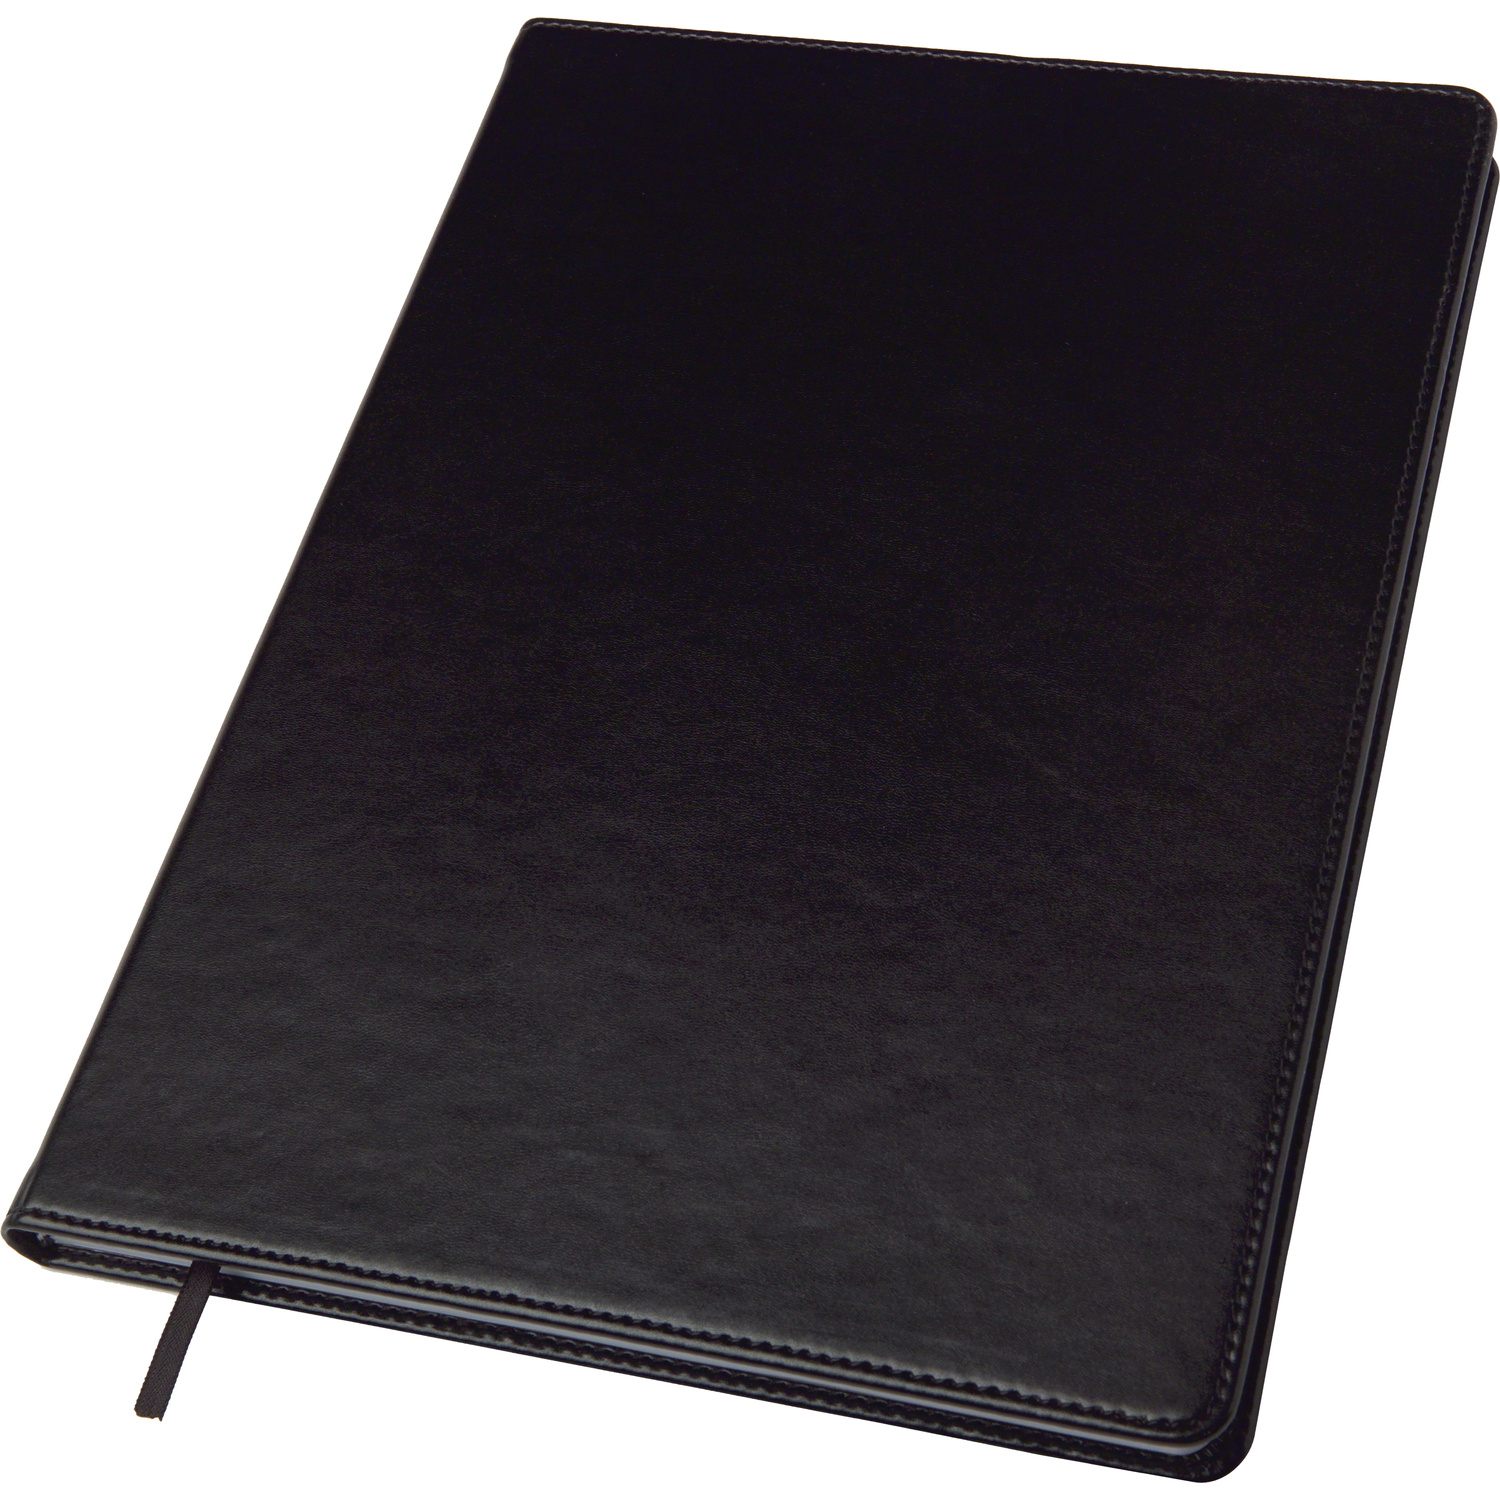 005138 001999999 3d045 frt pro01 fal - Notebook with ballpen (approx. A6)